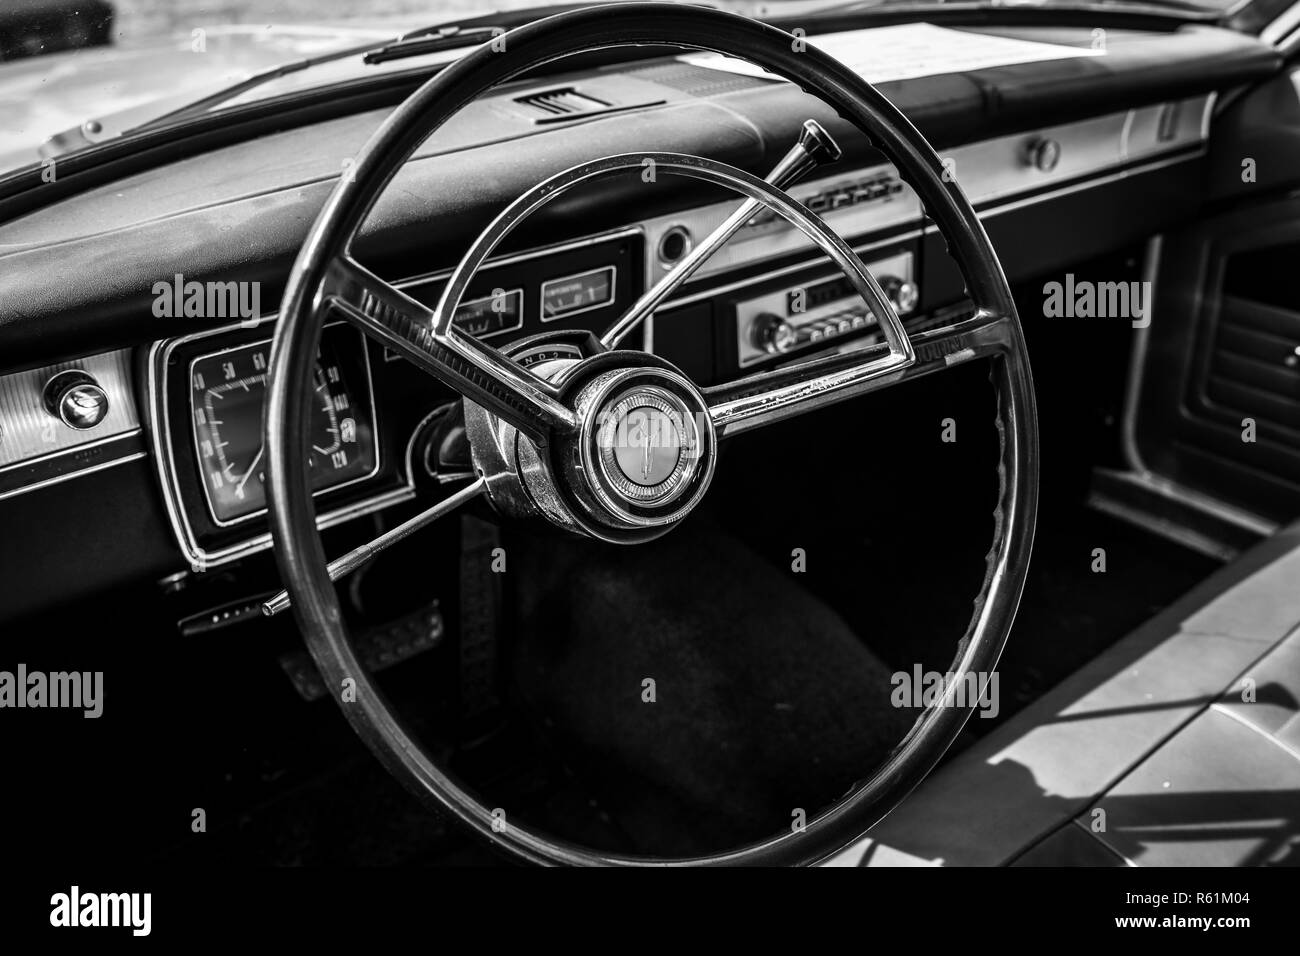 PAAREN IM GLIEN, ALLEMAGNE - le 19 mai 2018 : Intérieur d'une voiture compacte Plymouth Valiant 200, 1966. Noir et blanc. Die Oldtimer Show 2018. Banque D'Images